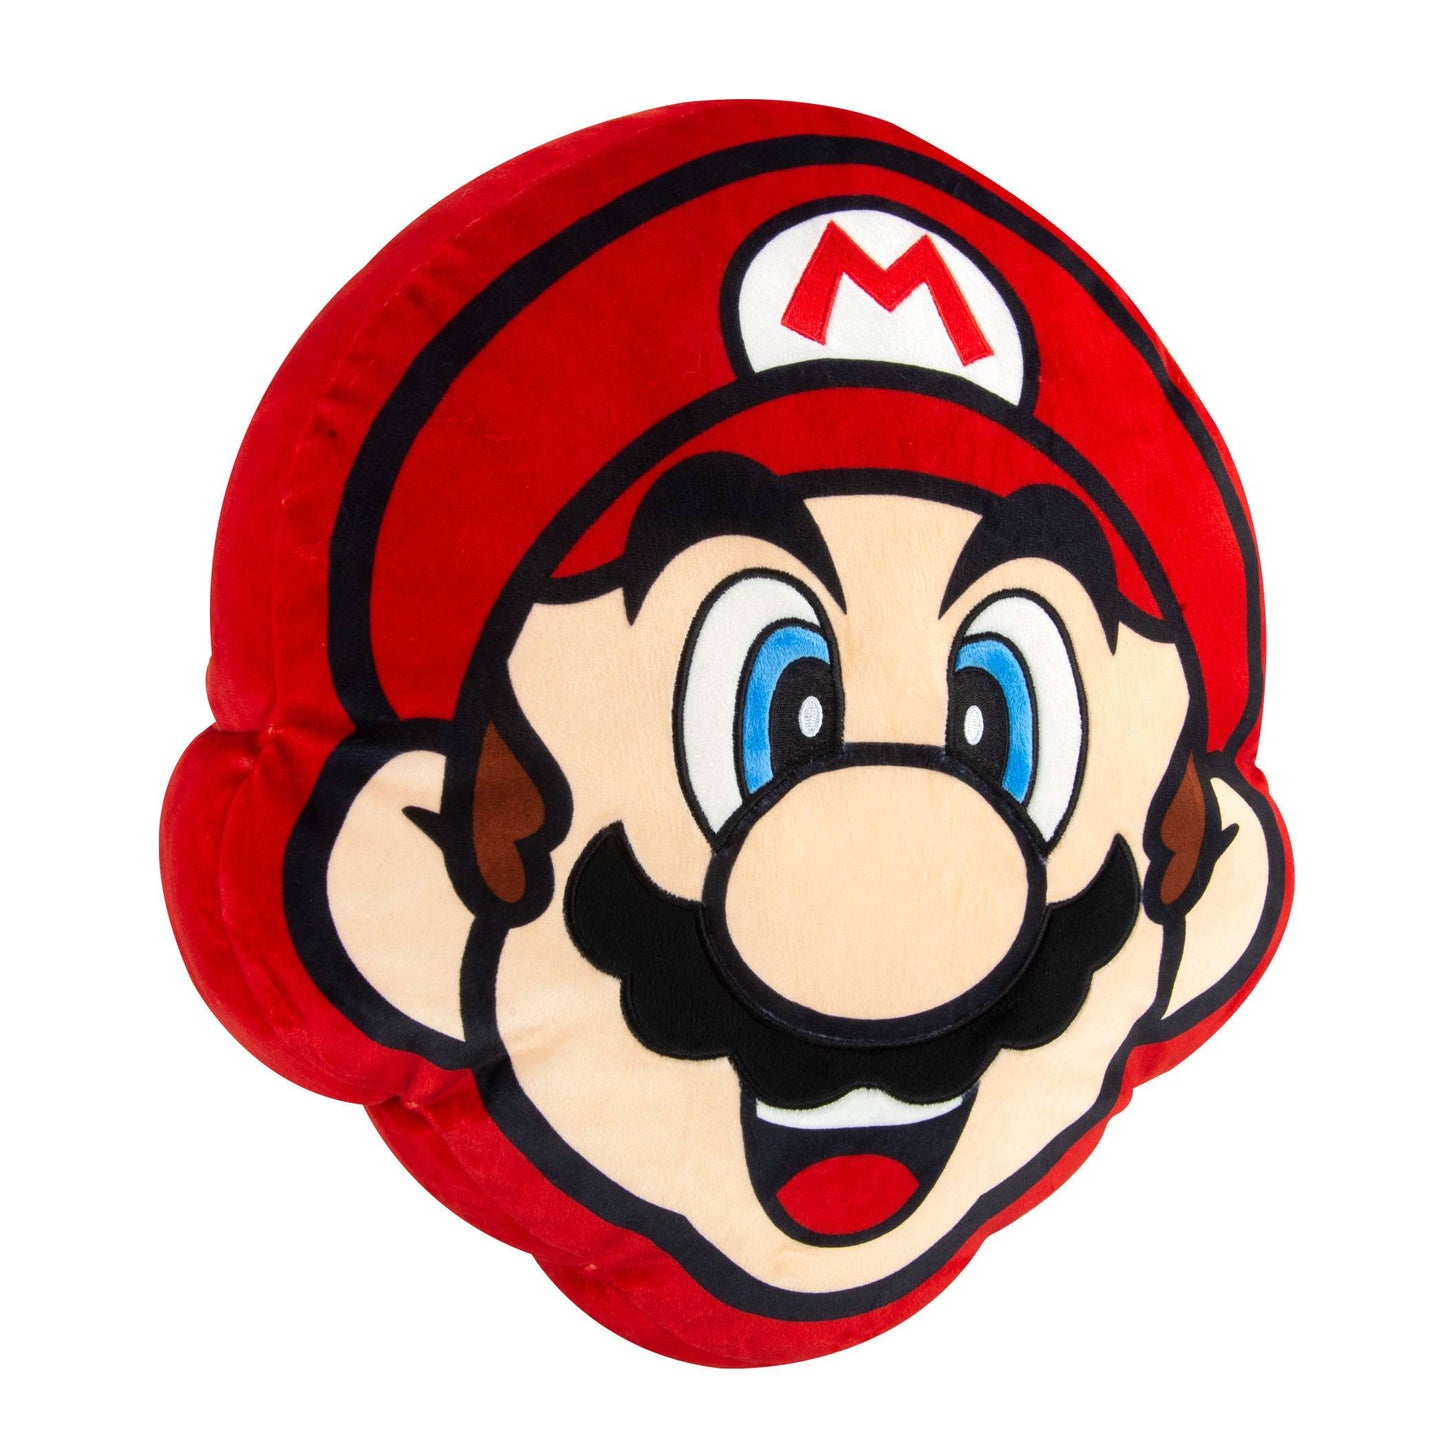 Super Mario plush - Mario 